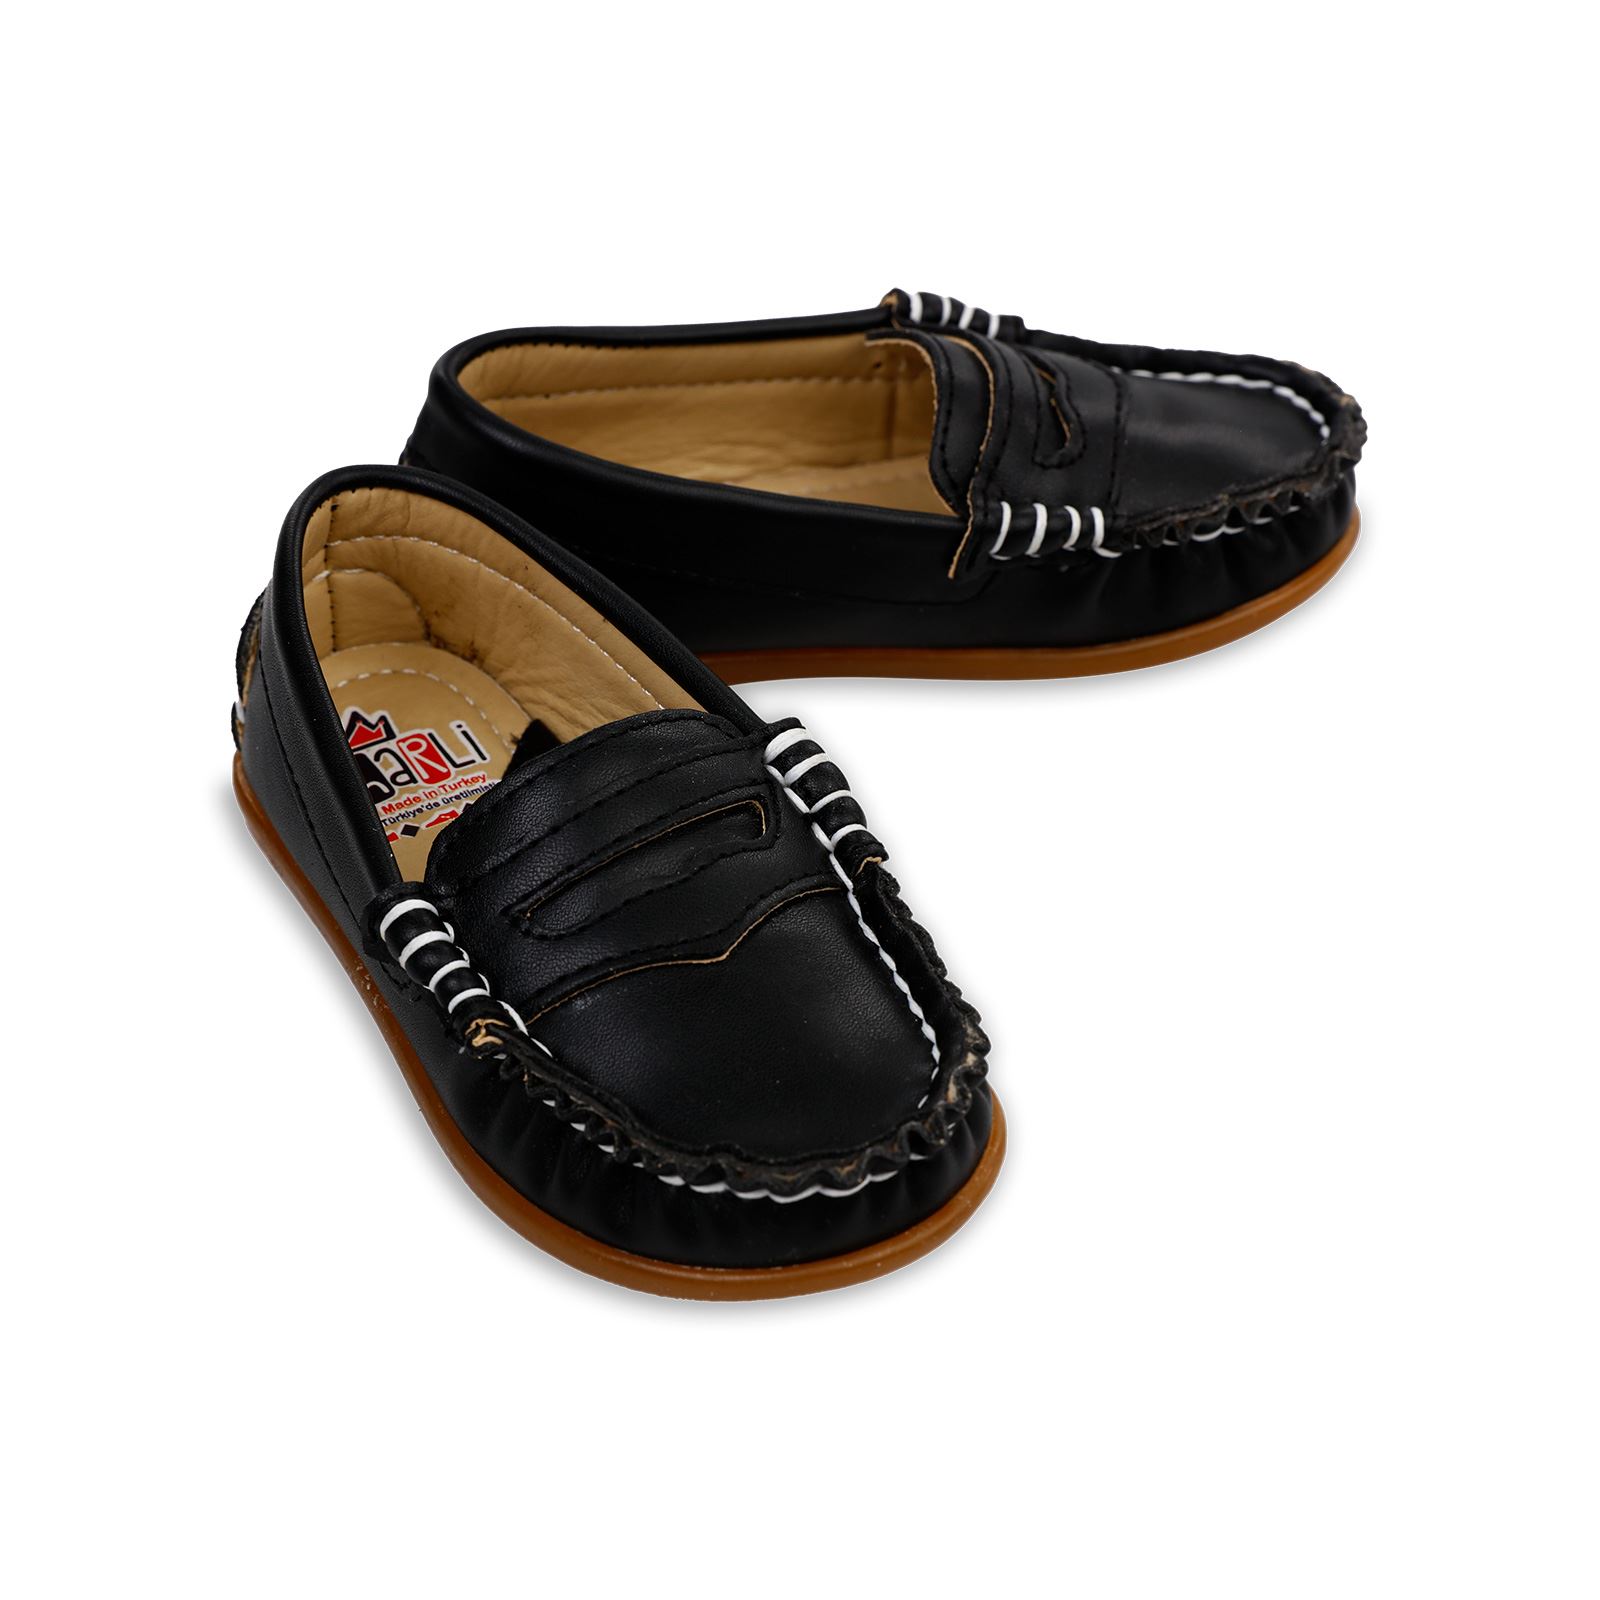 Harli Erkek Çocuk Klasik Ayakkabı 21-25 Numara Siyah